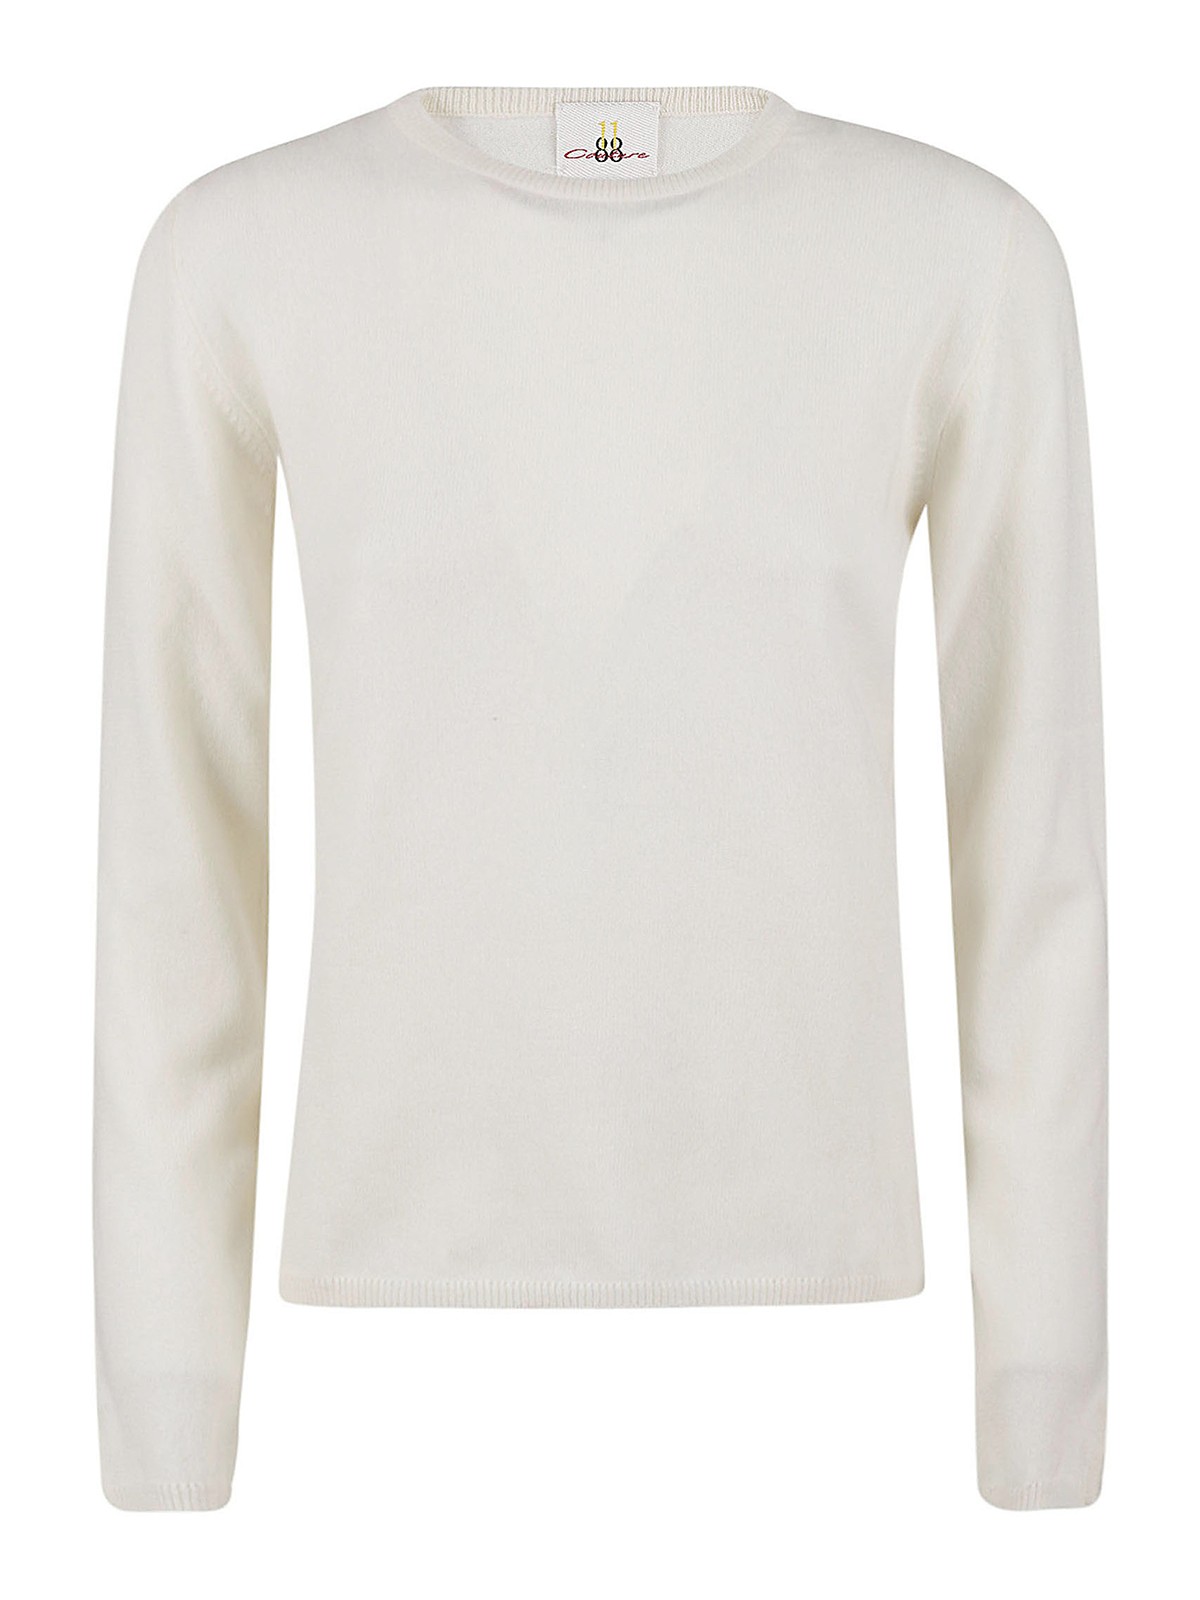 Eleven88 Cashmere Lap Sweater In White